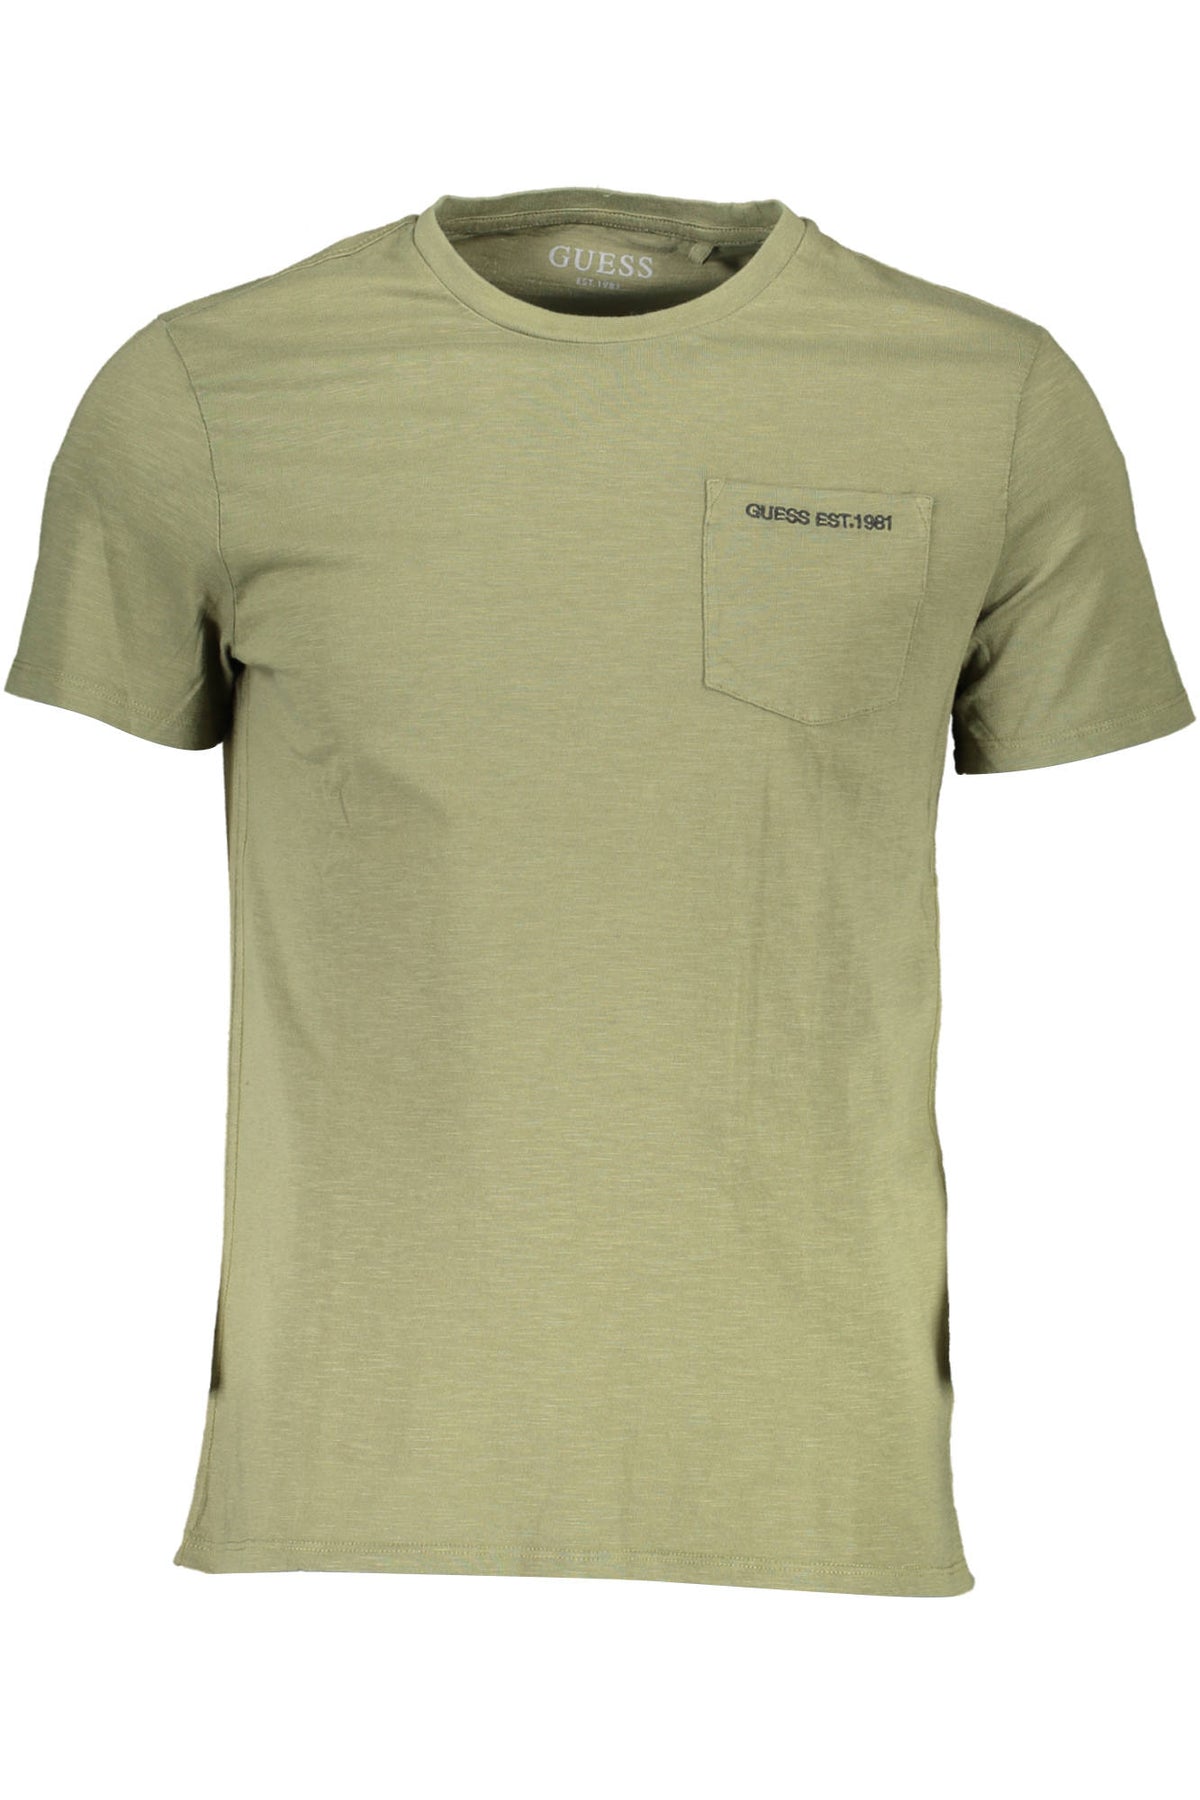 GUESS JEANS Herren T-Shirt Shirt Sweatshirt Oberteil mit Rundhalsausschnitt, kurzärmlig